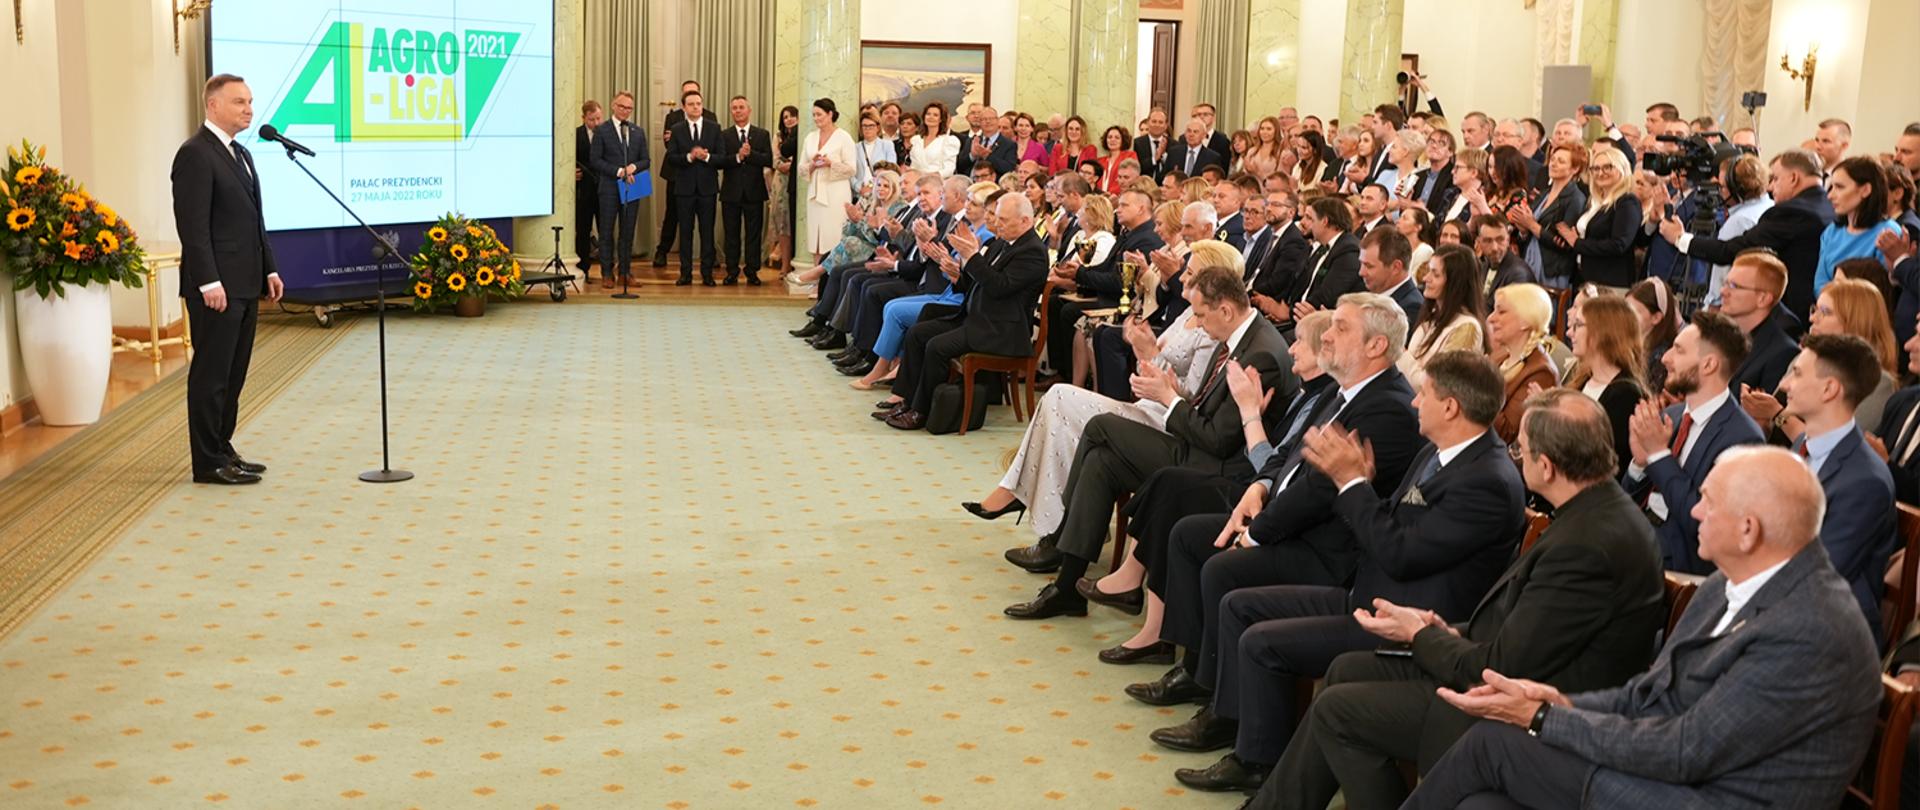 Prezydent RP Andrzej Duda podczas wystąpienia